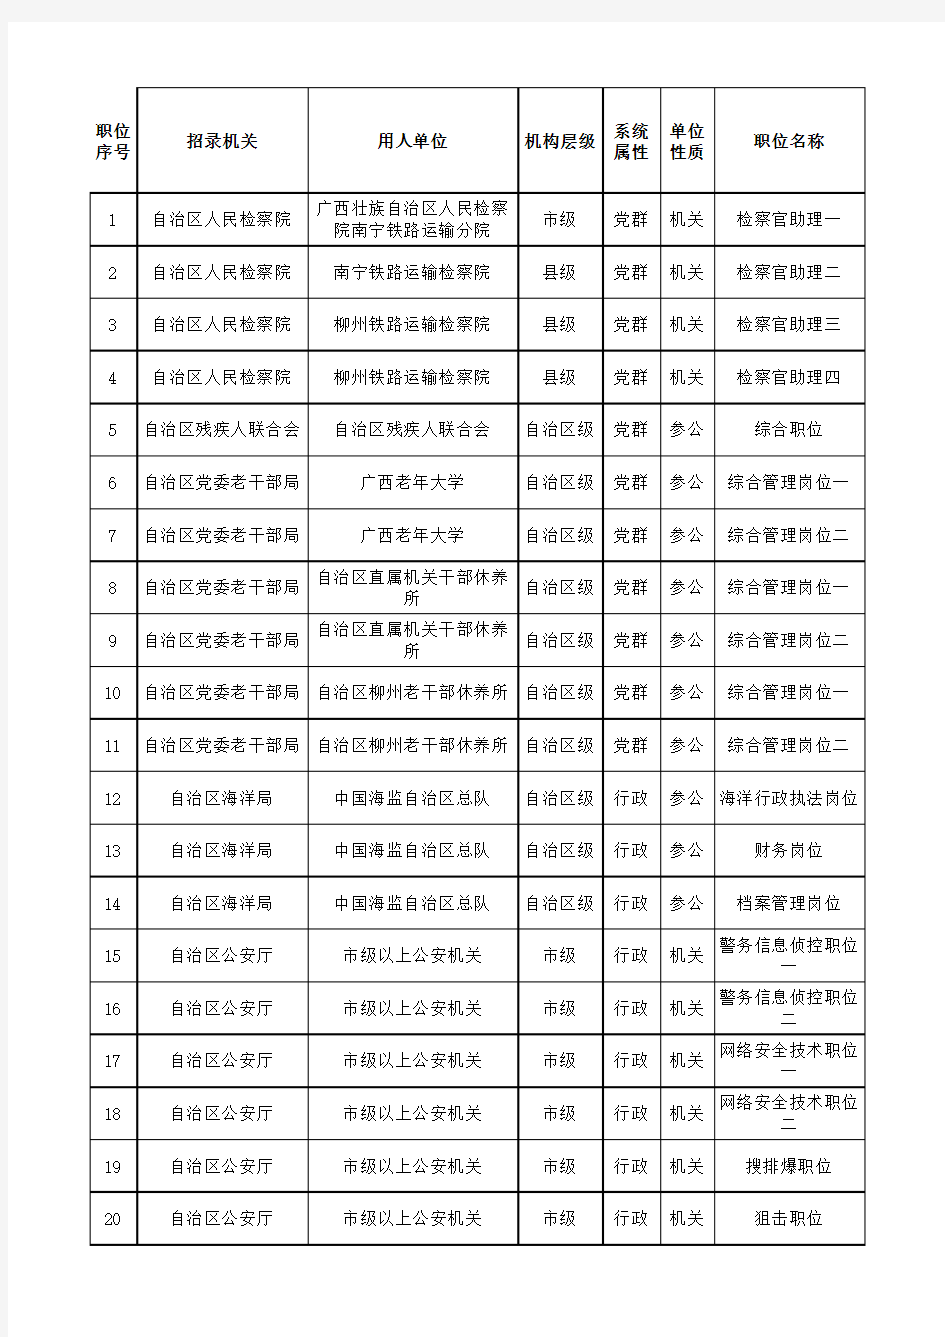 广西壮族自治区2021年度考试录用公务员职位计划表